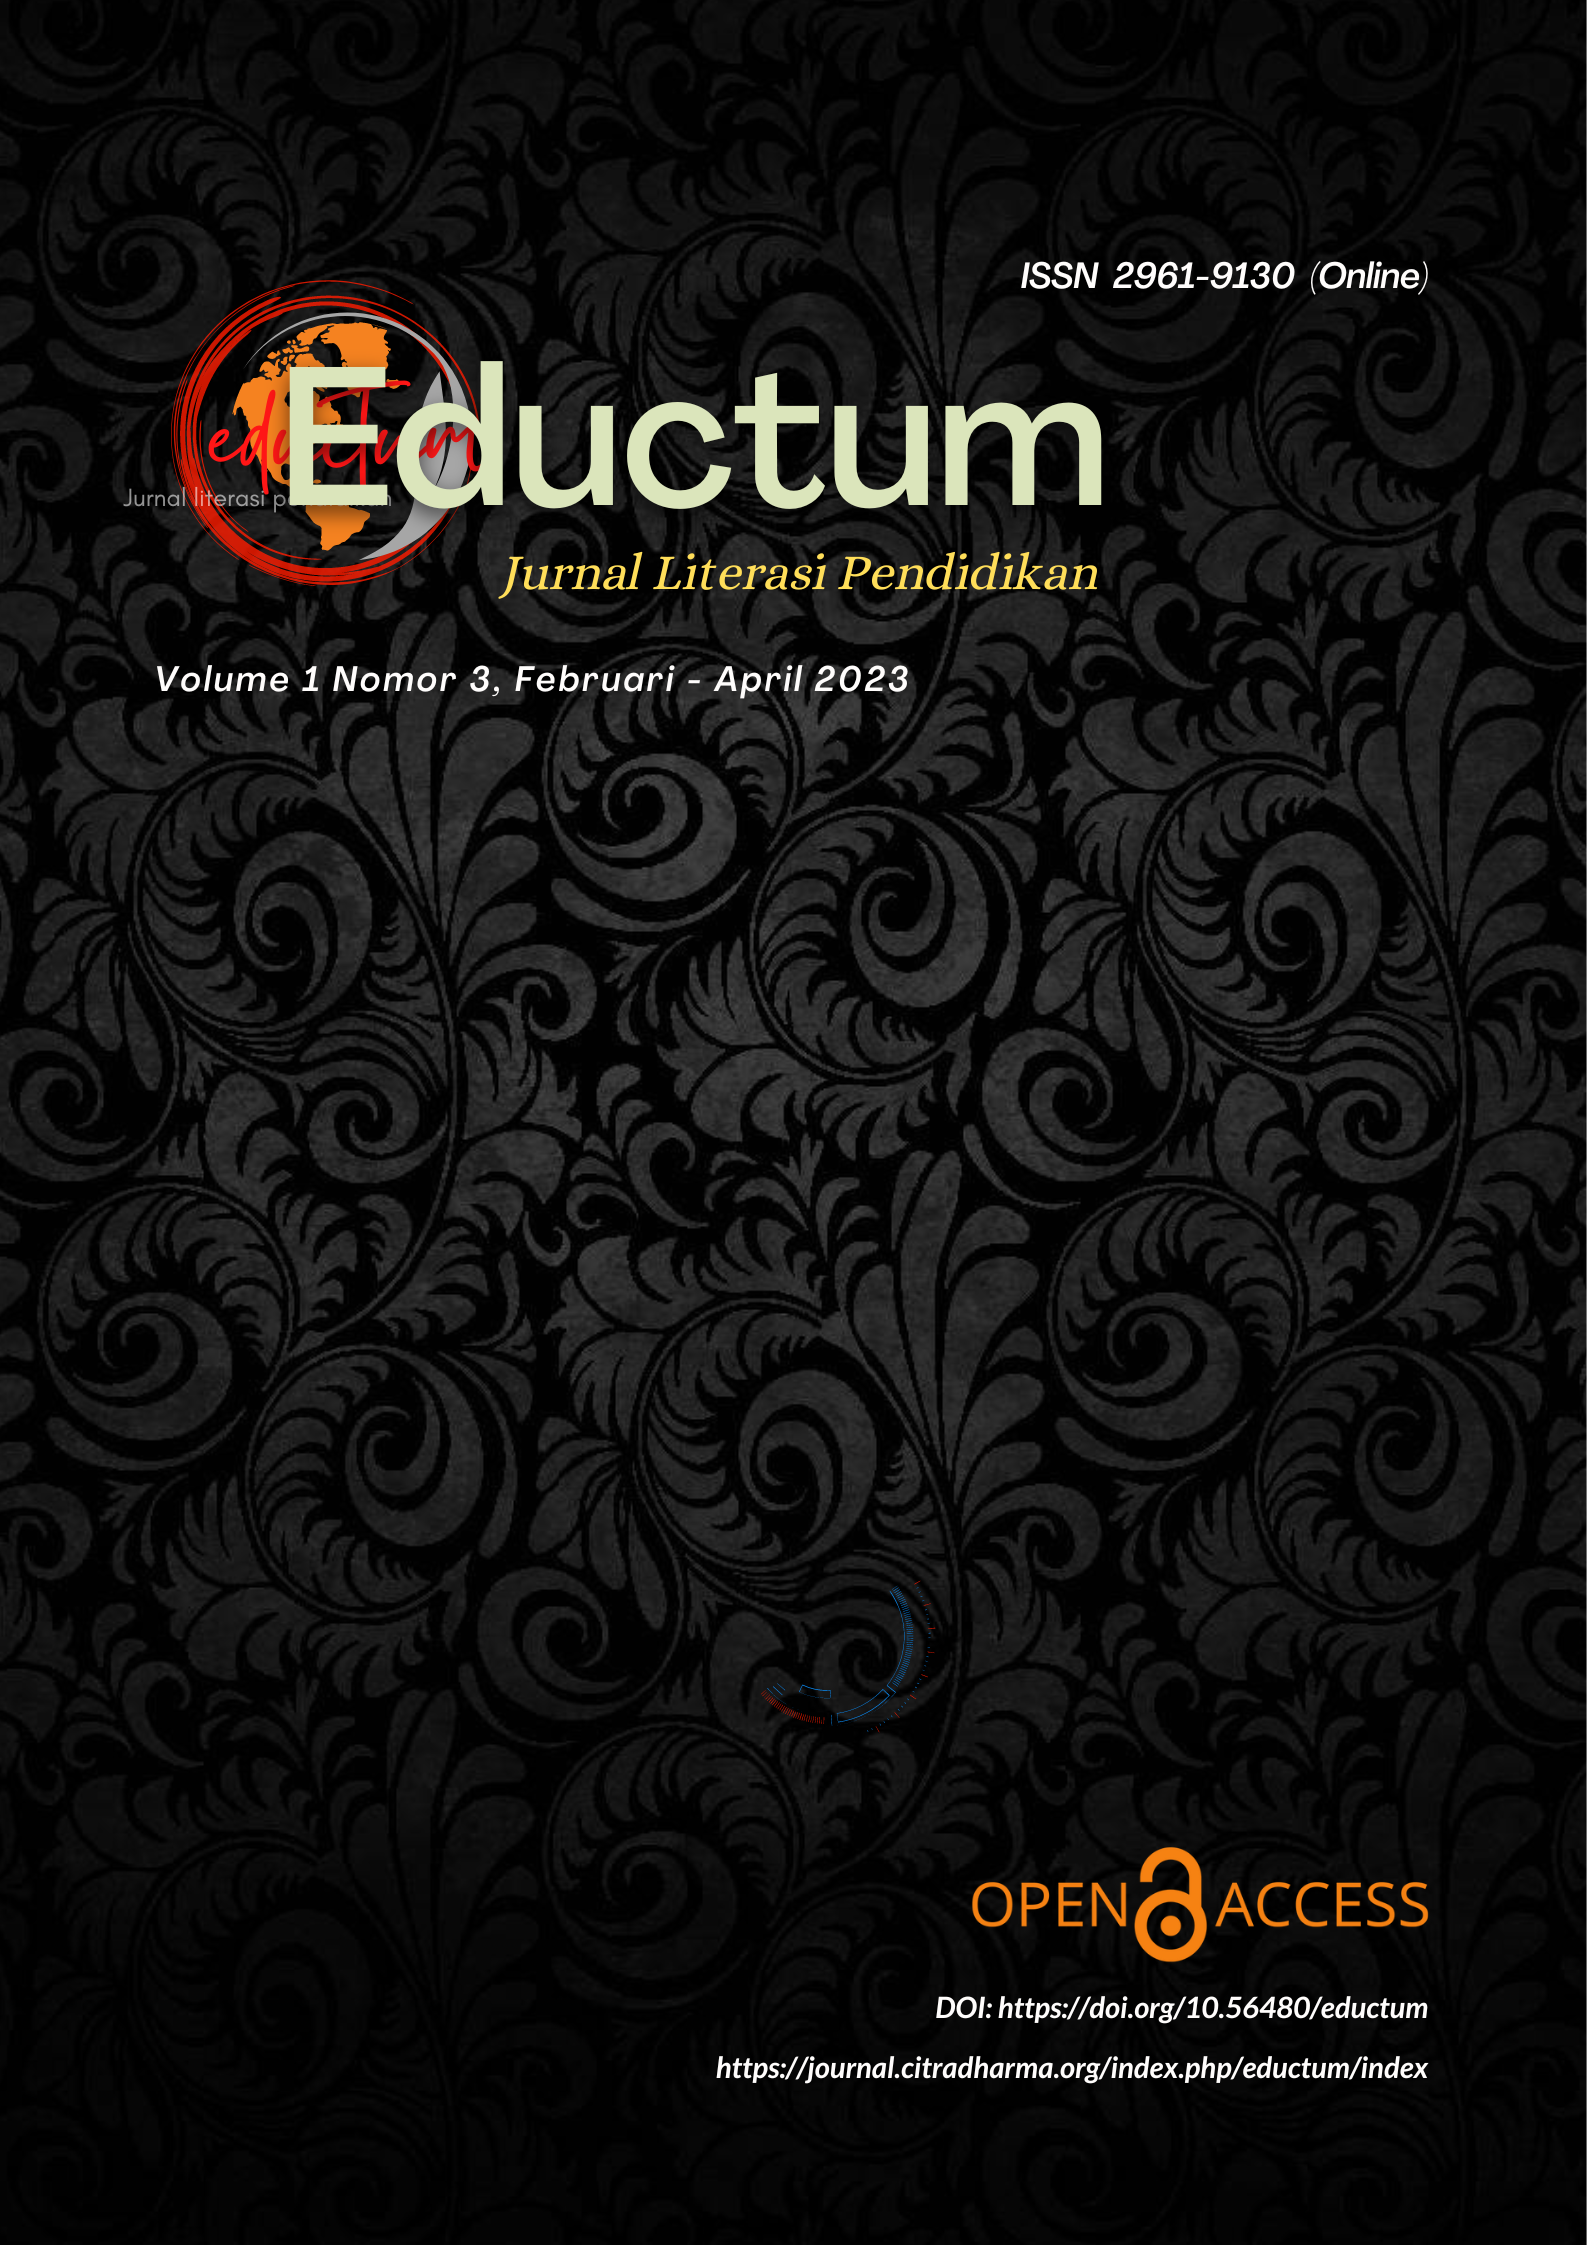 					Lihat Vol 1 No 3 (2023): eductum: Jurnal Literasi Pendidikan edisi Februari 2023 - April 2023
				